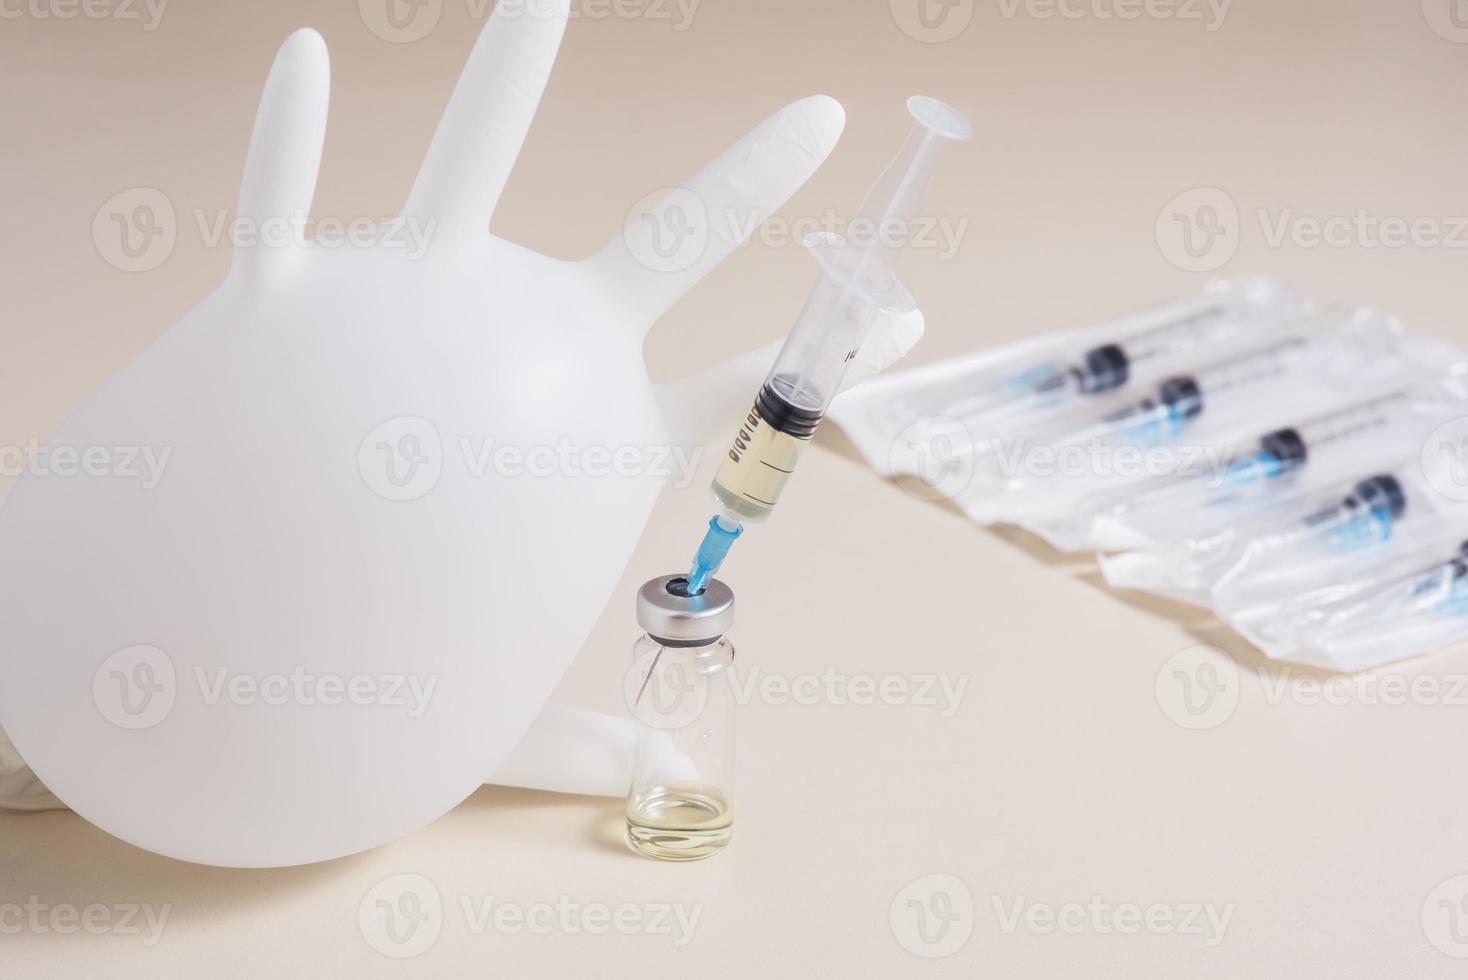 Massenimpfung gegen das Coronavirus. Aufgeblasener medizinischer Handschuh neben einer Spritze mit einem Covid-19-Impfstoff. foto